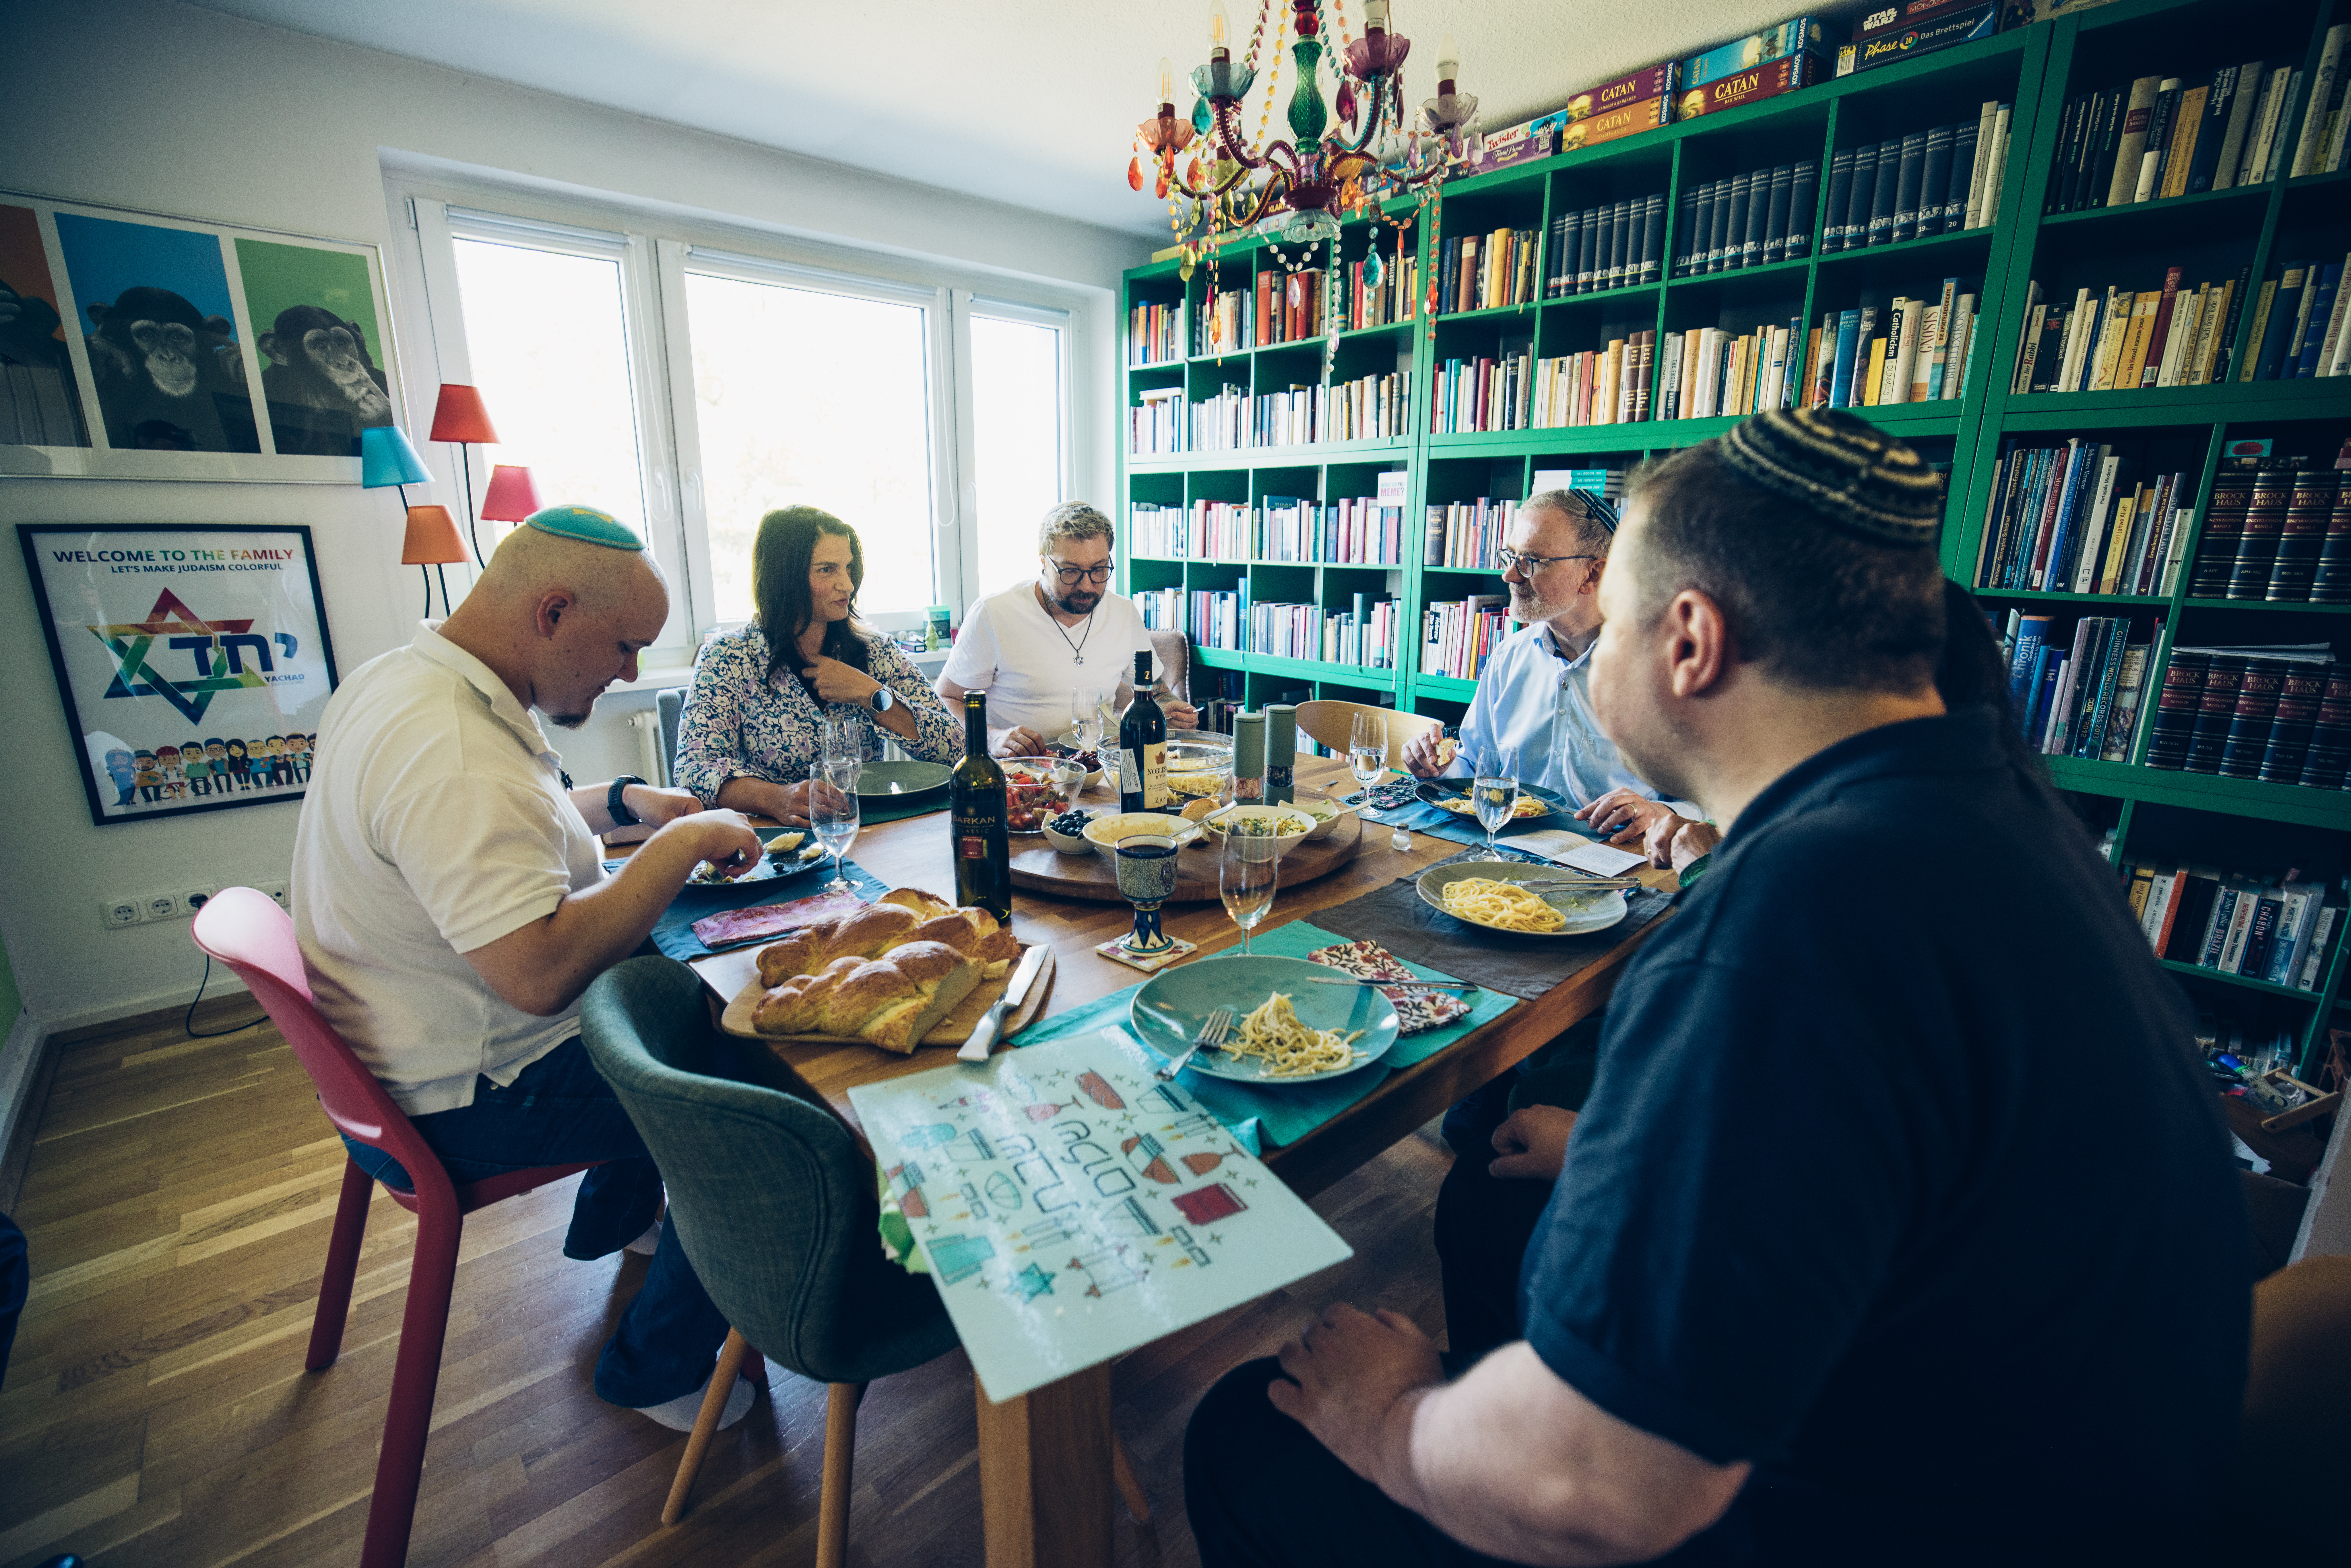 Fünf Menschen sitzen an einem großen gedeckten Esstisch und unterhalten sich. Vier Personen tragen Kippas auf dem Kopf. Auf dem Tisch stehen tradionell jüdische Speisen.